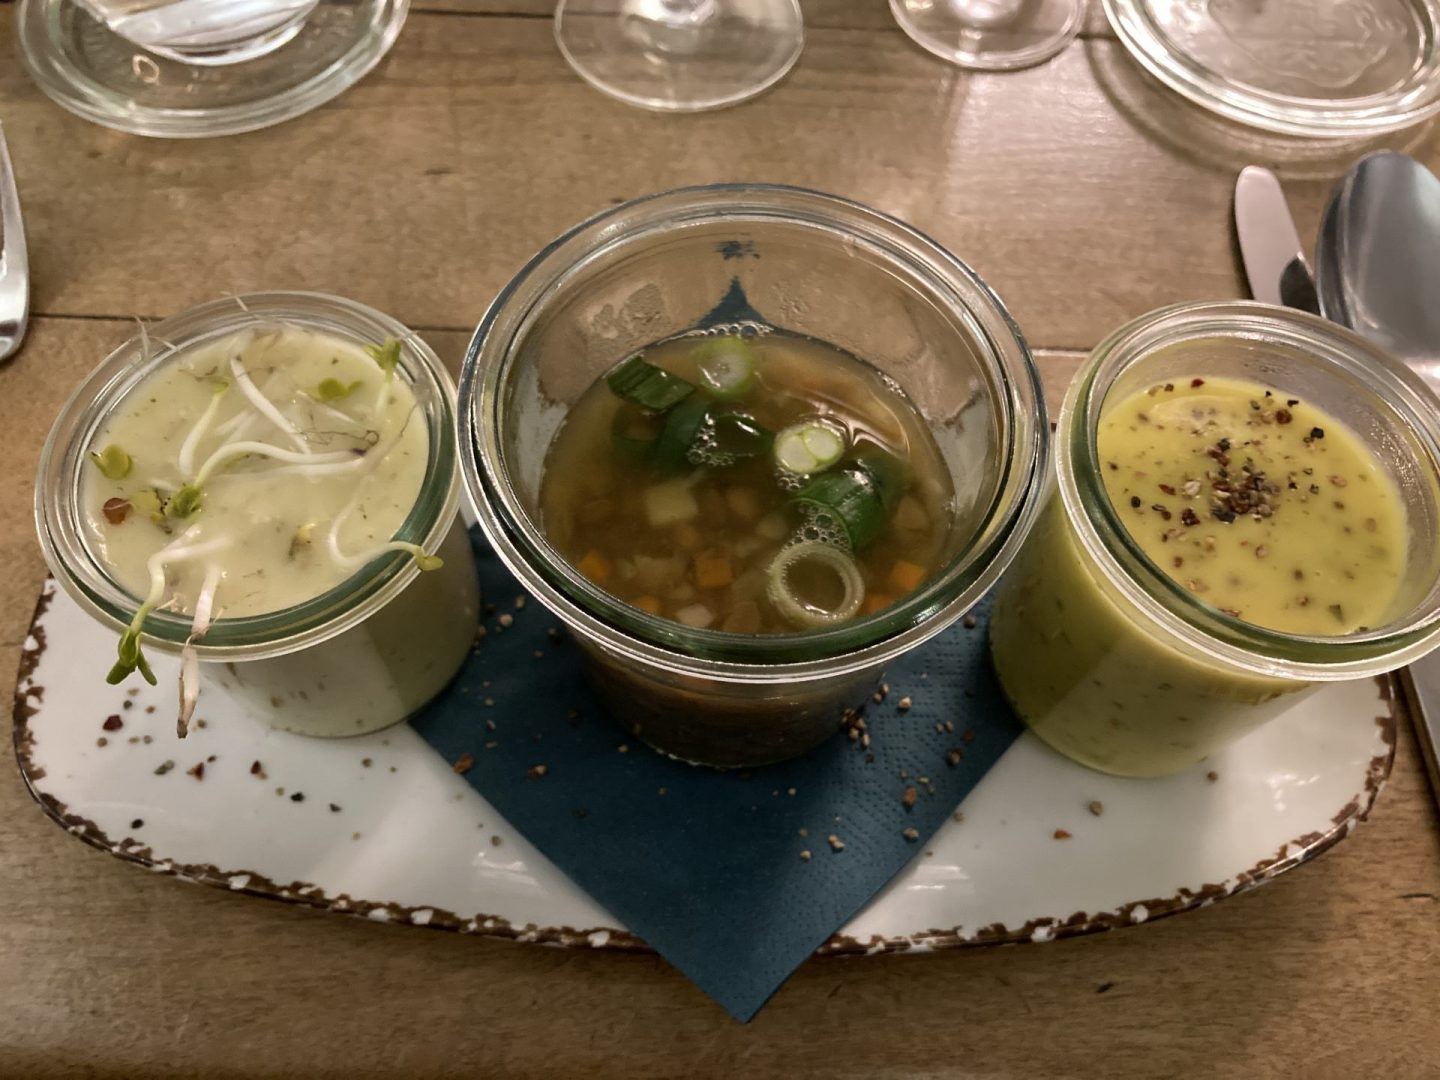 Erfahrung Bewertung Kritik Kerstins Dortmund Menükarussell Vorspeise dreierlei Suppe Foodblog Sternestulle